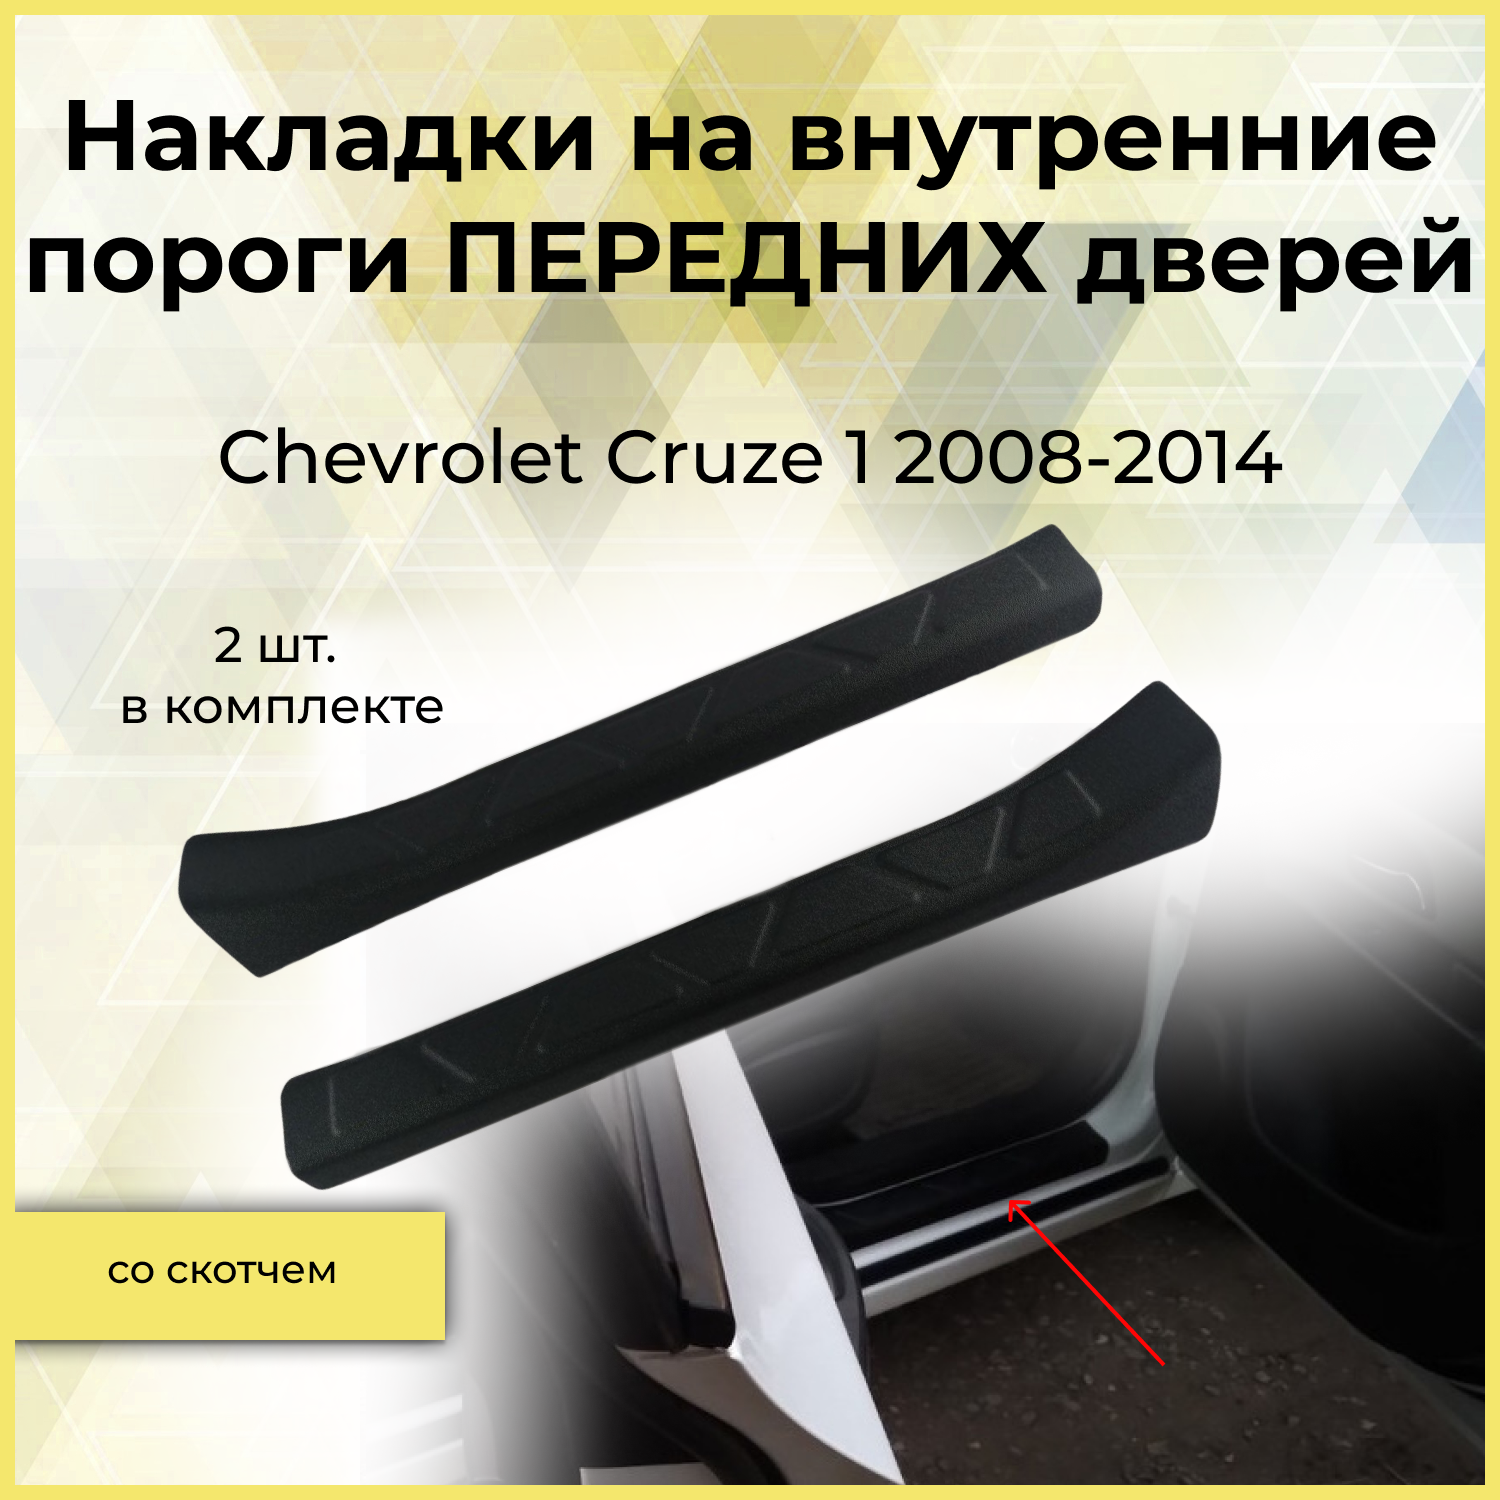 Накладки на внутренние пороги передних дверей для Chevrolet Cruze 1 2008-2014